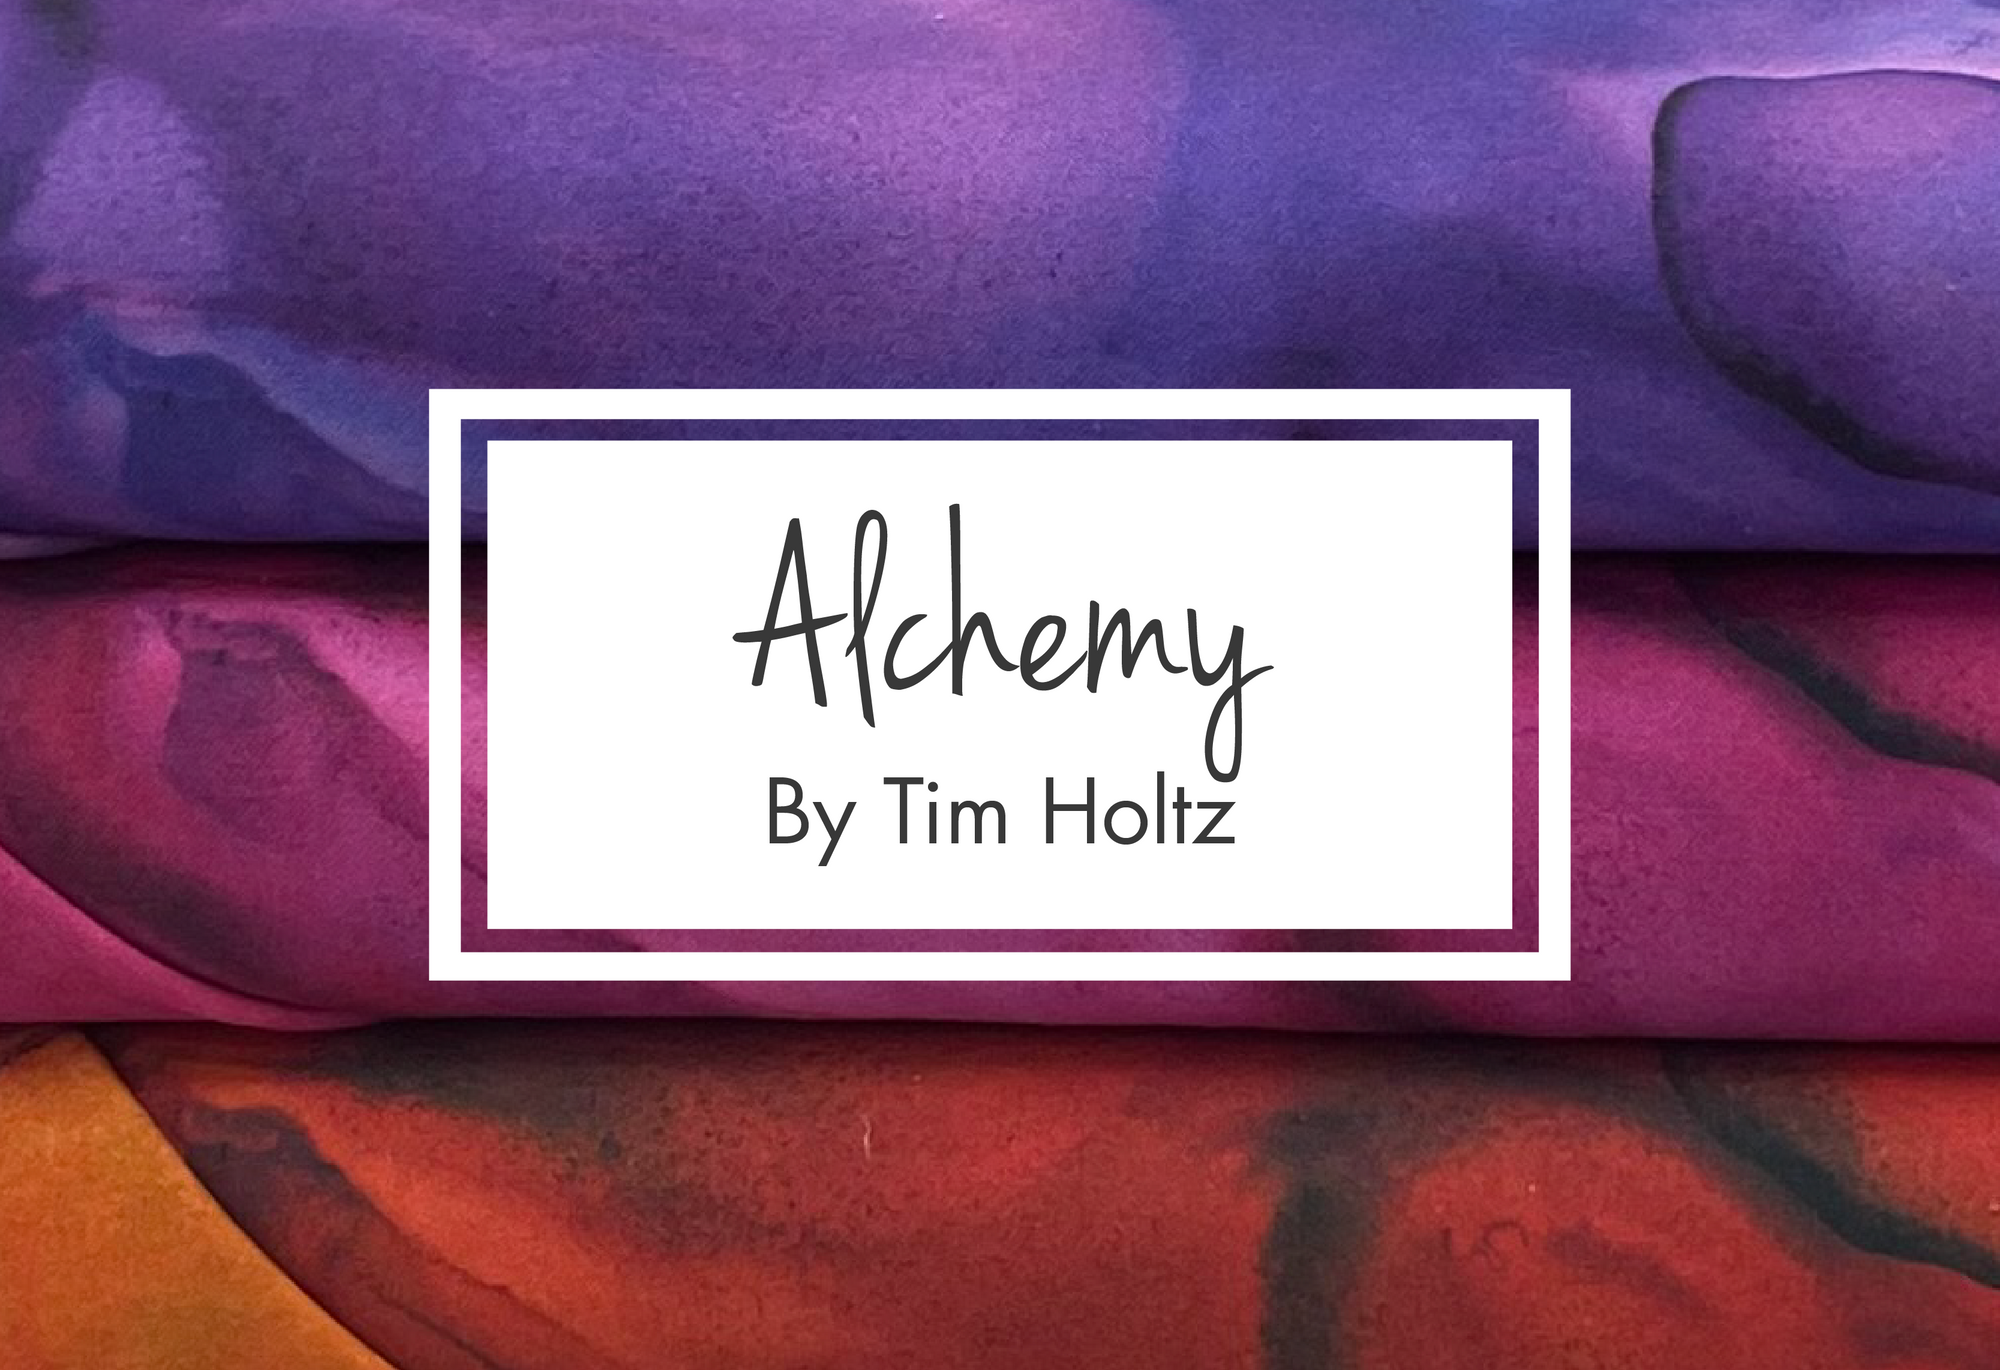 Alchemy by Tim Holtz